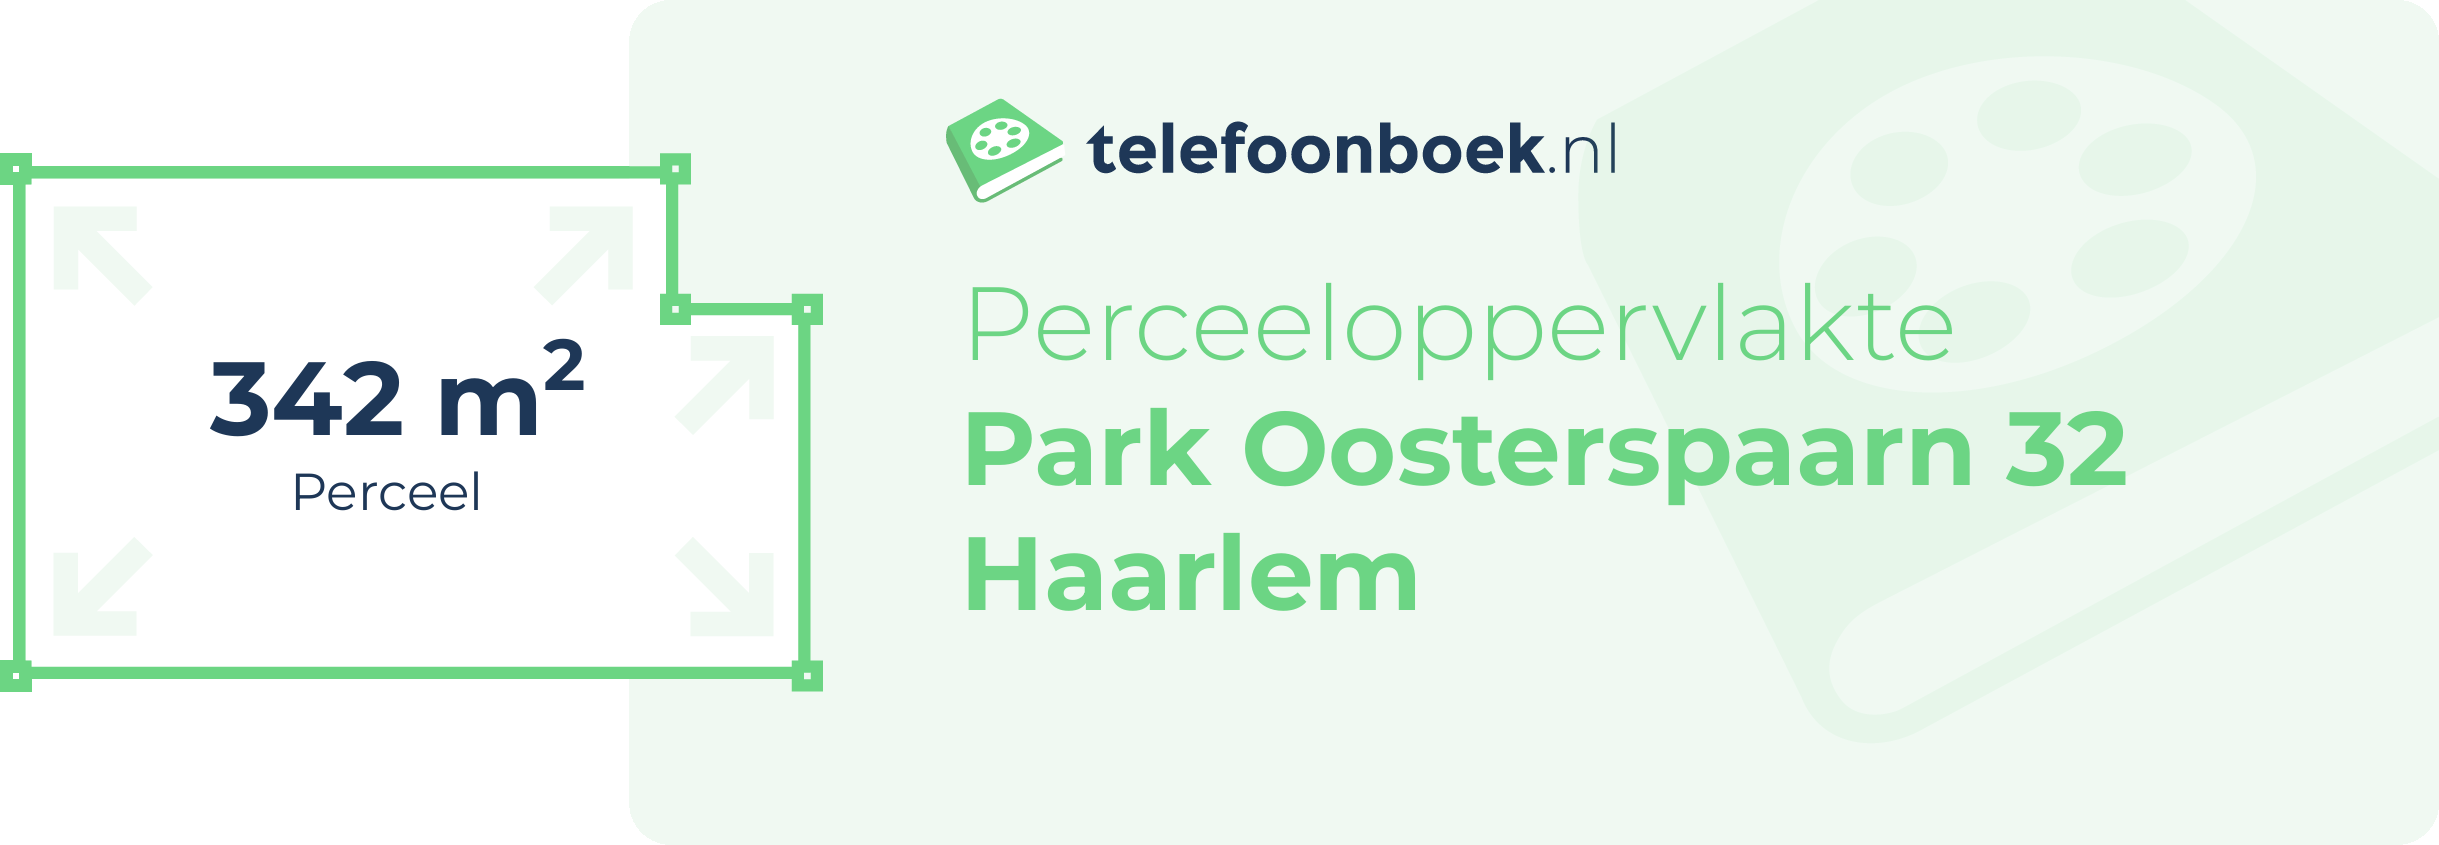 Perceeloppervlakte Park Oosterspaarn 32 Haarlem